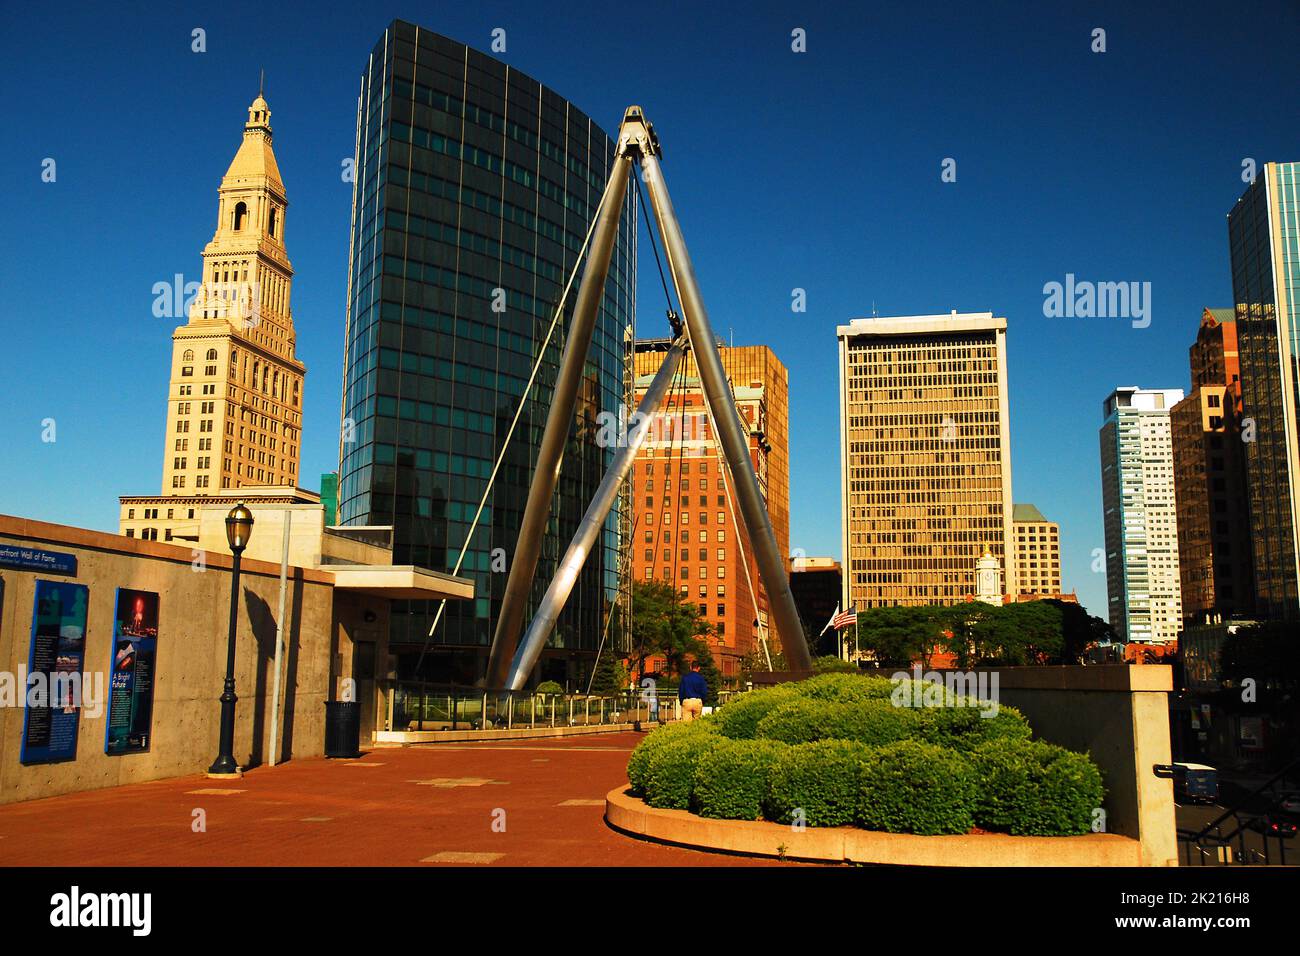 Die Skyline von Hartford Connecticut, von der Founders Bridge aus gesehen, einem Fußgängerweg, bietet eine Mischung aus moderner und klassischer Architektur Stockfoto